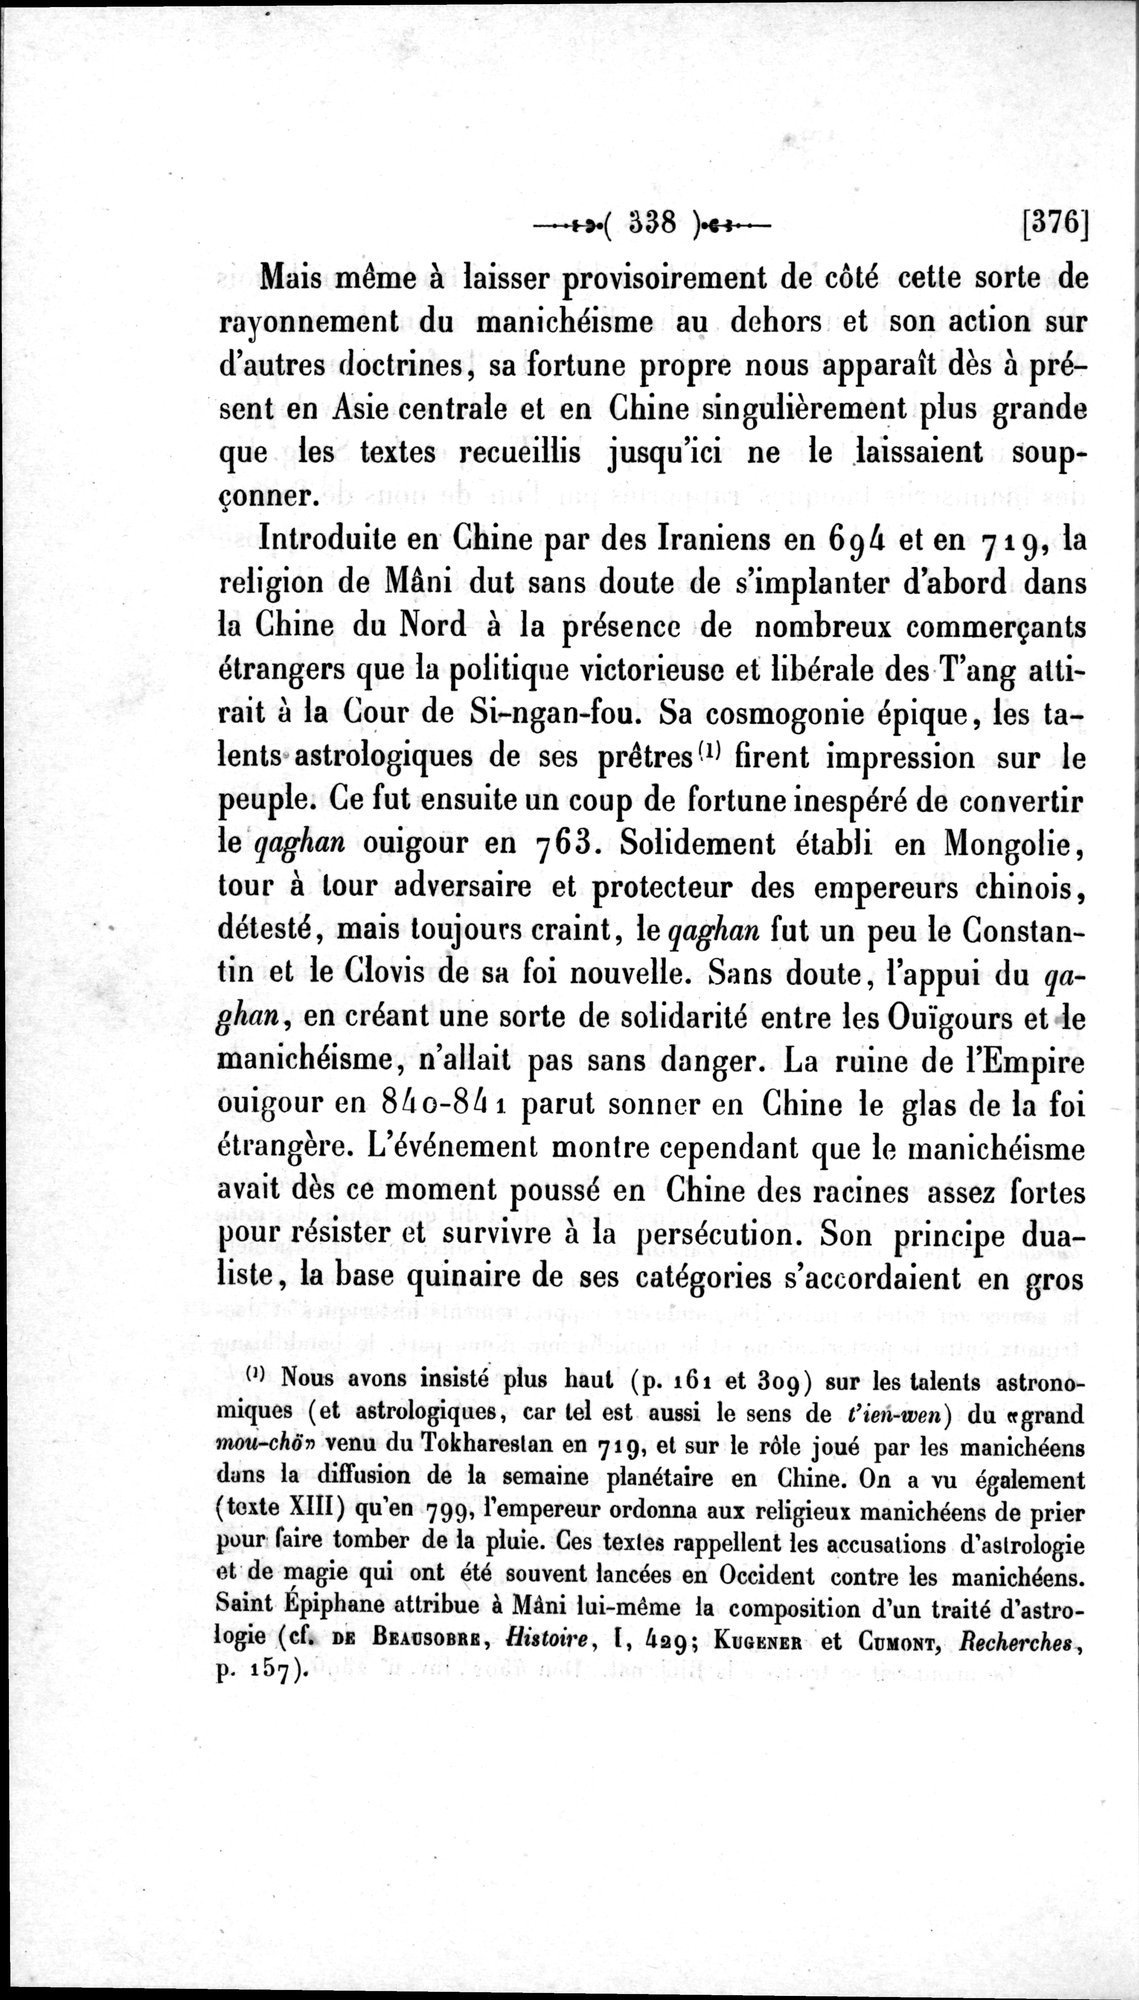 Un traité manichéen retrouvé en Chine : vol.1 / Page 348 (Grayscale High Resolution Image)